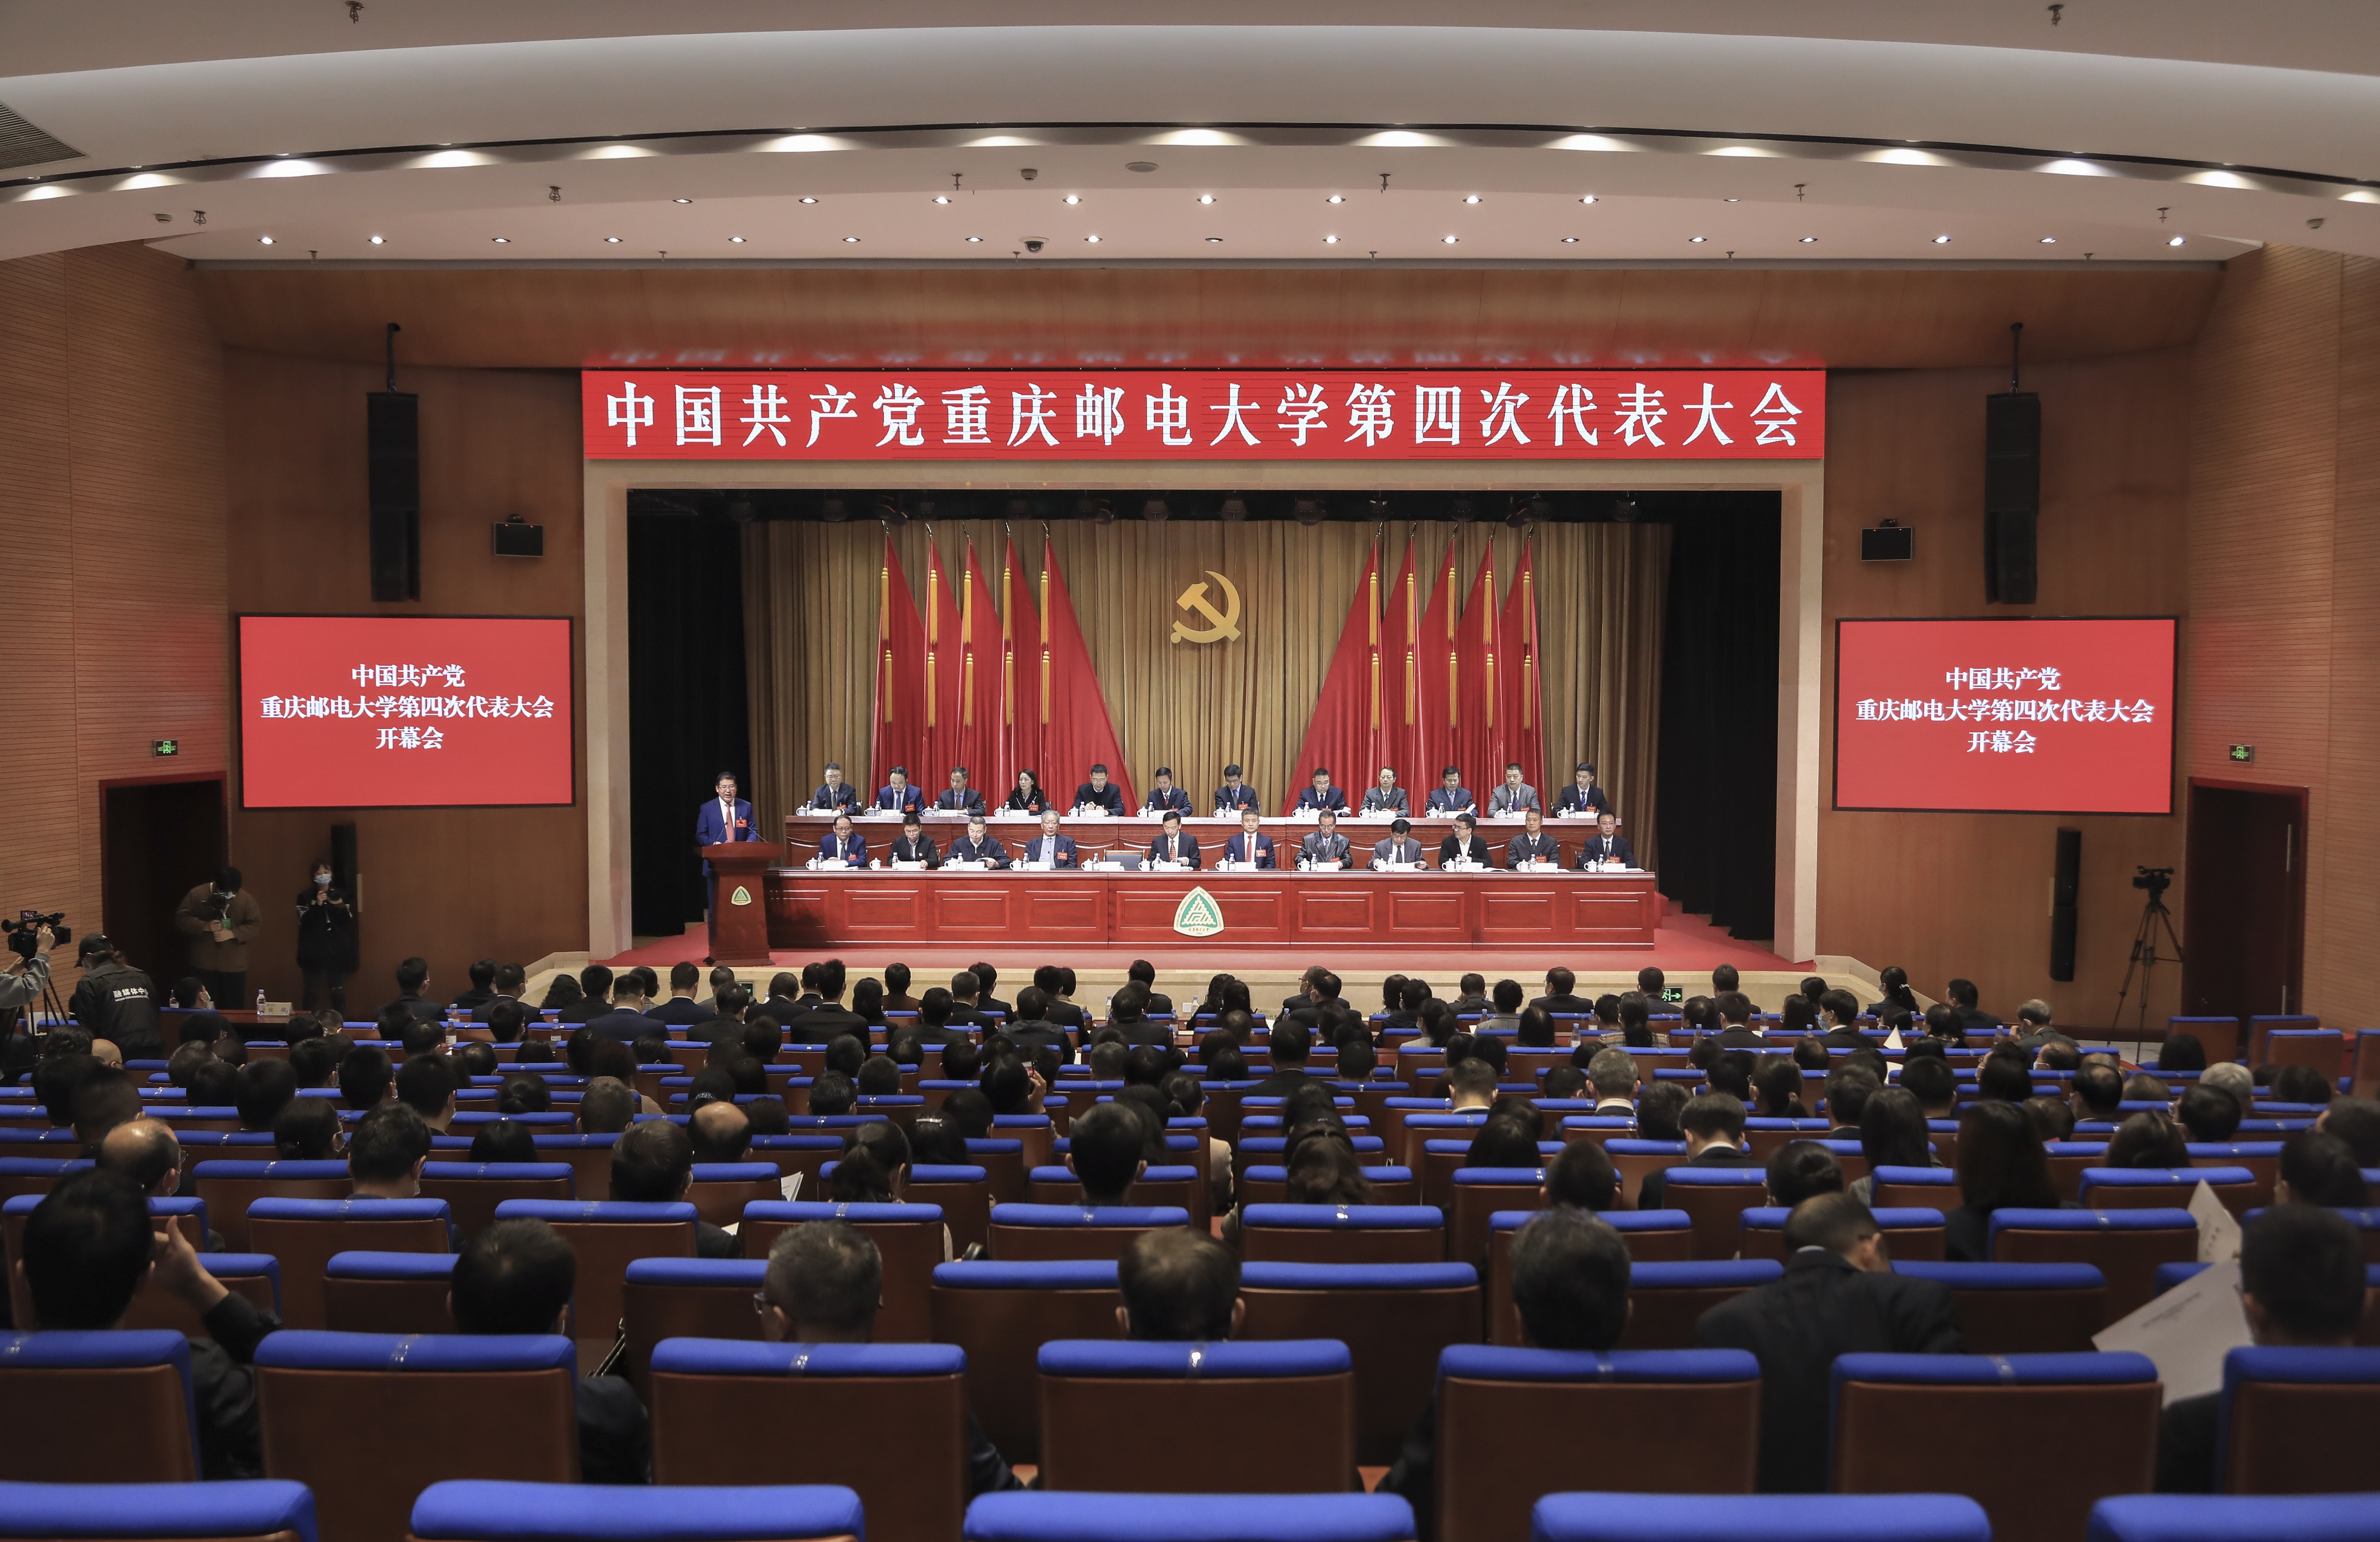 2-中国共产党重庆邮电大学第四次代表大会胜利召开.jpg